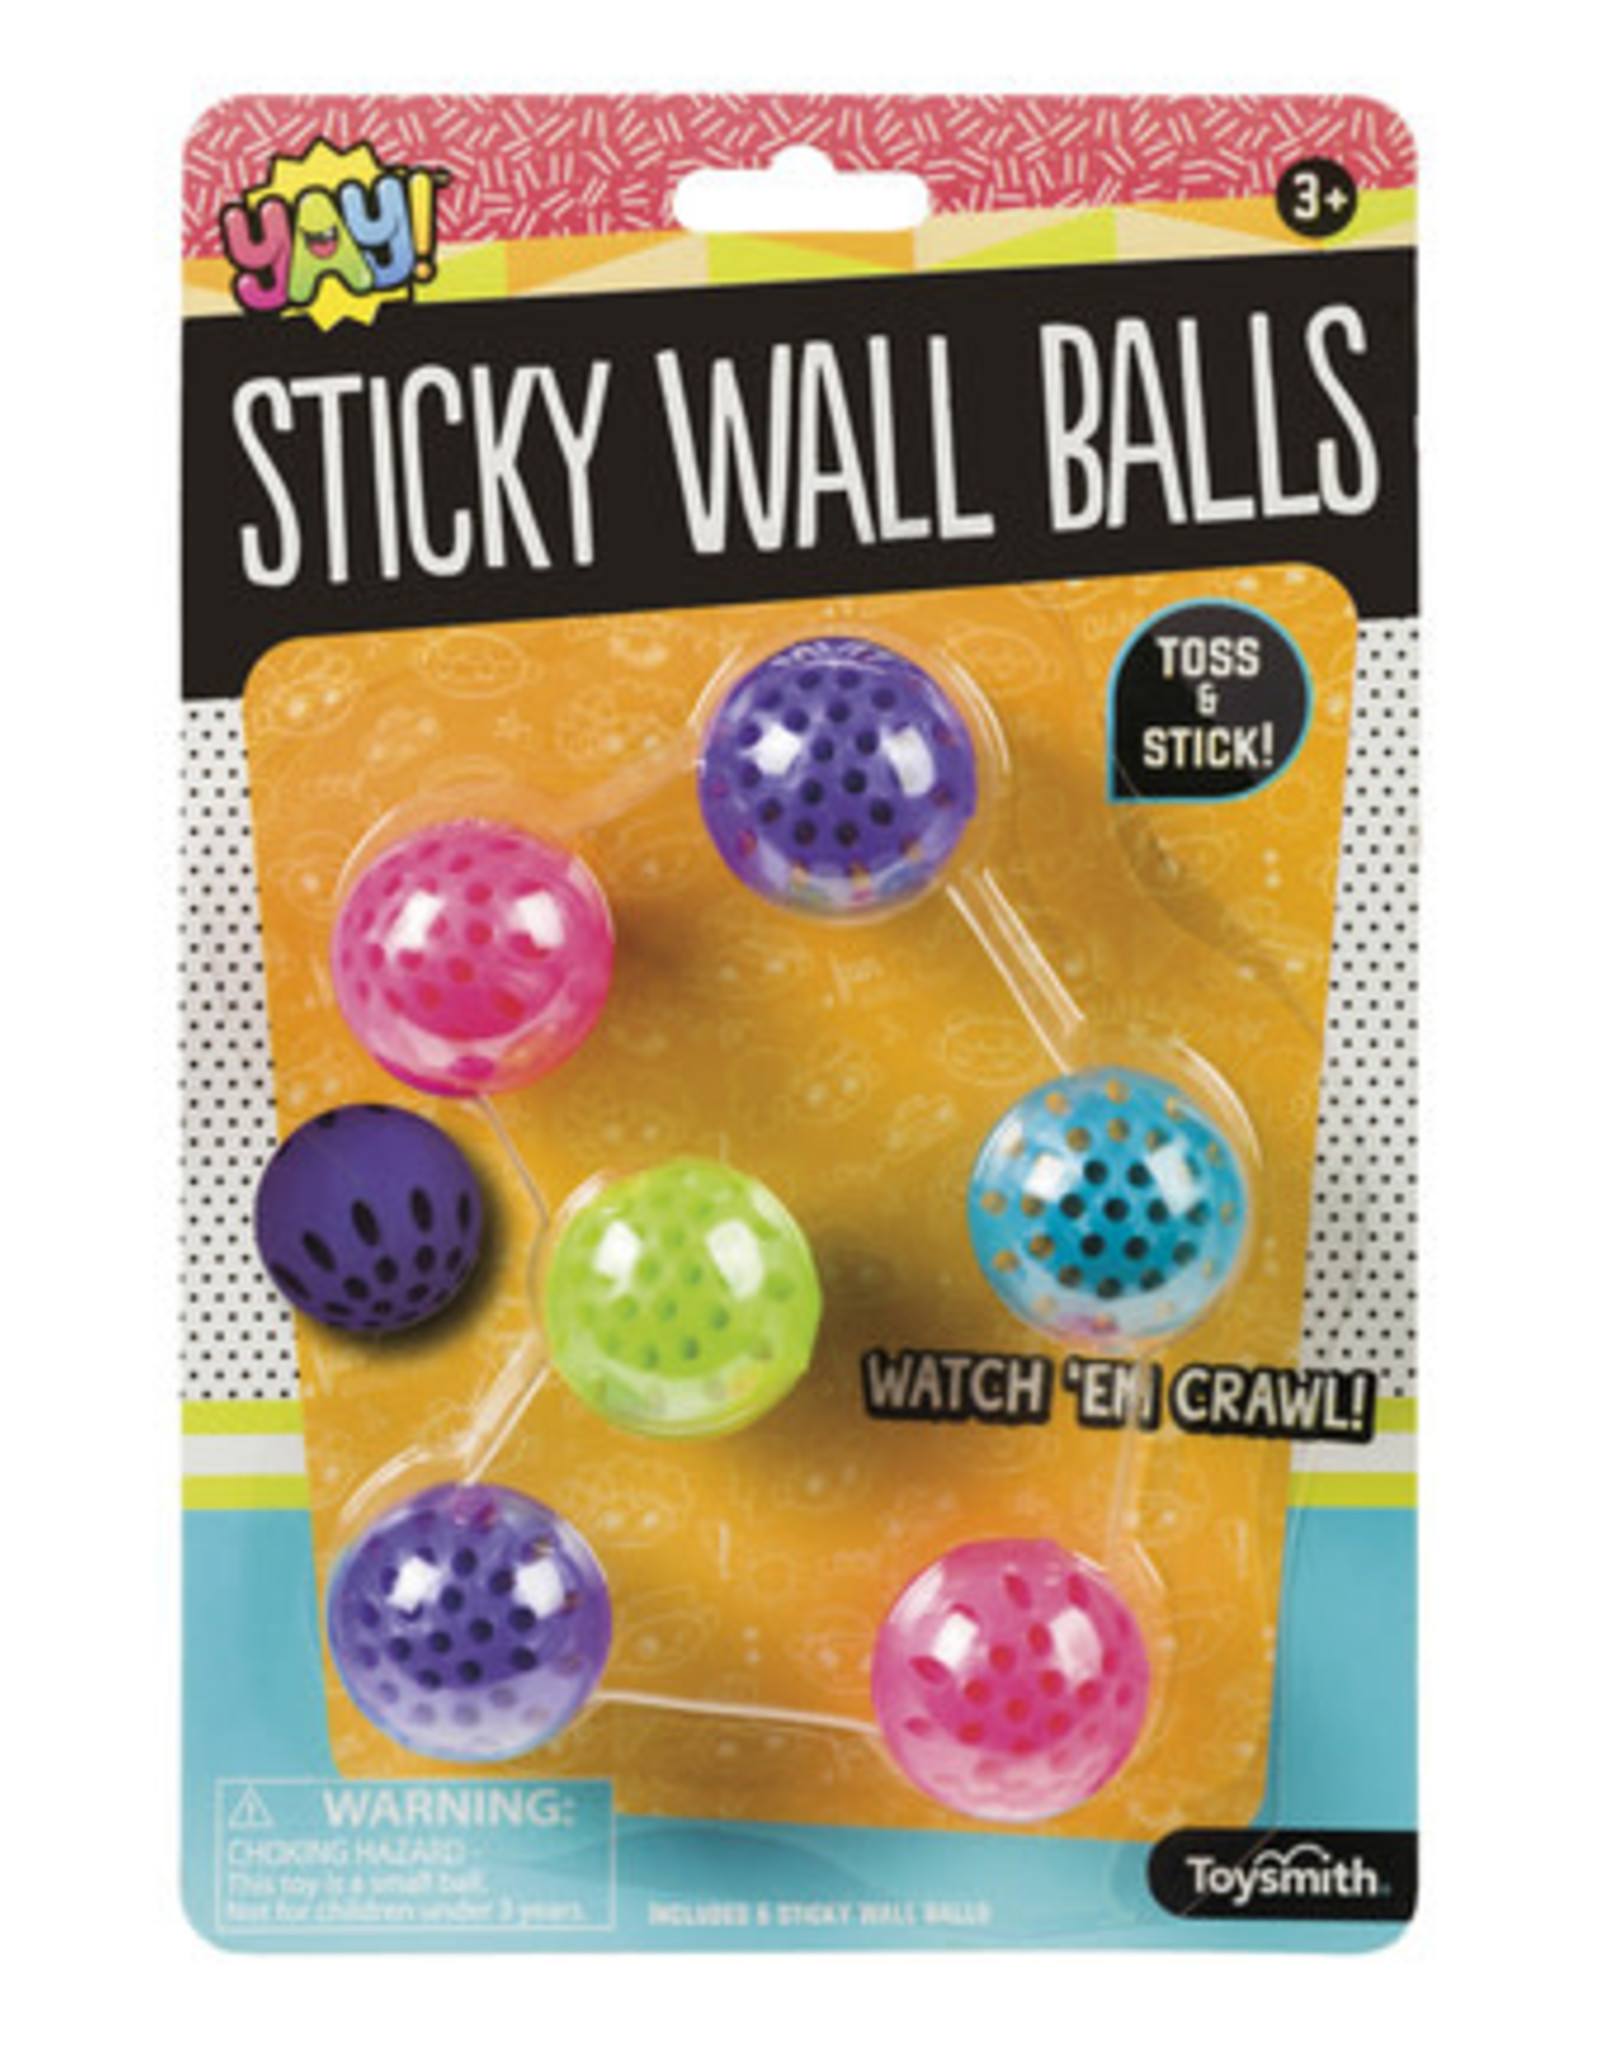 Toysmith Sticky Wall Balls - YAY